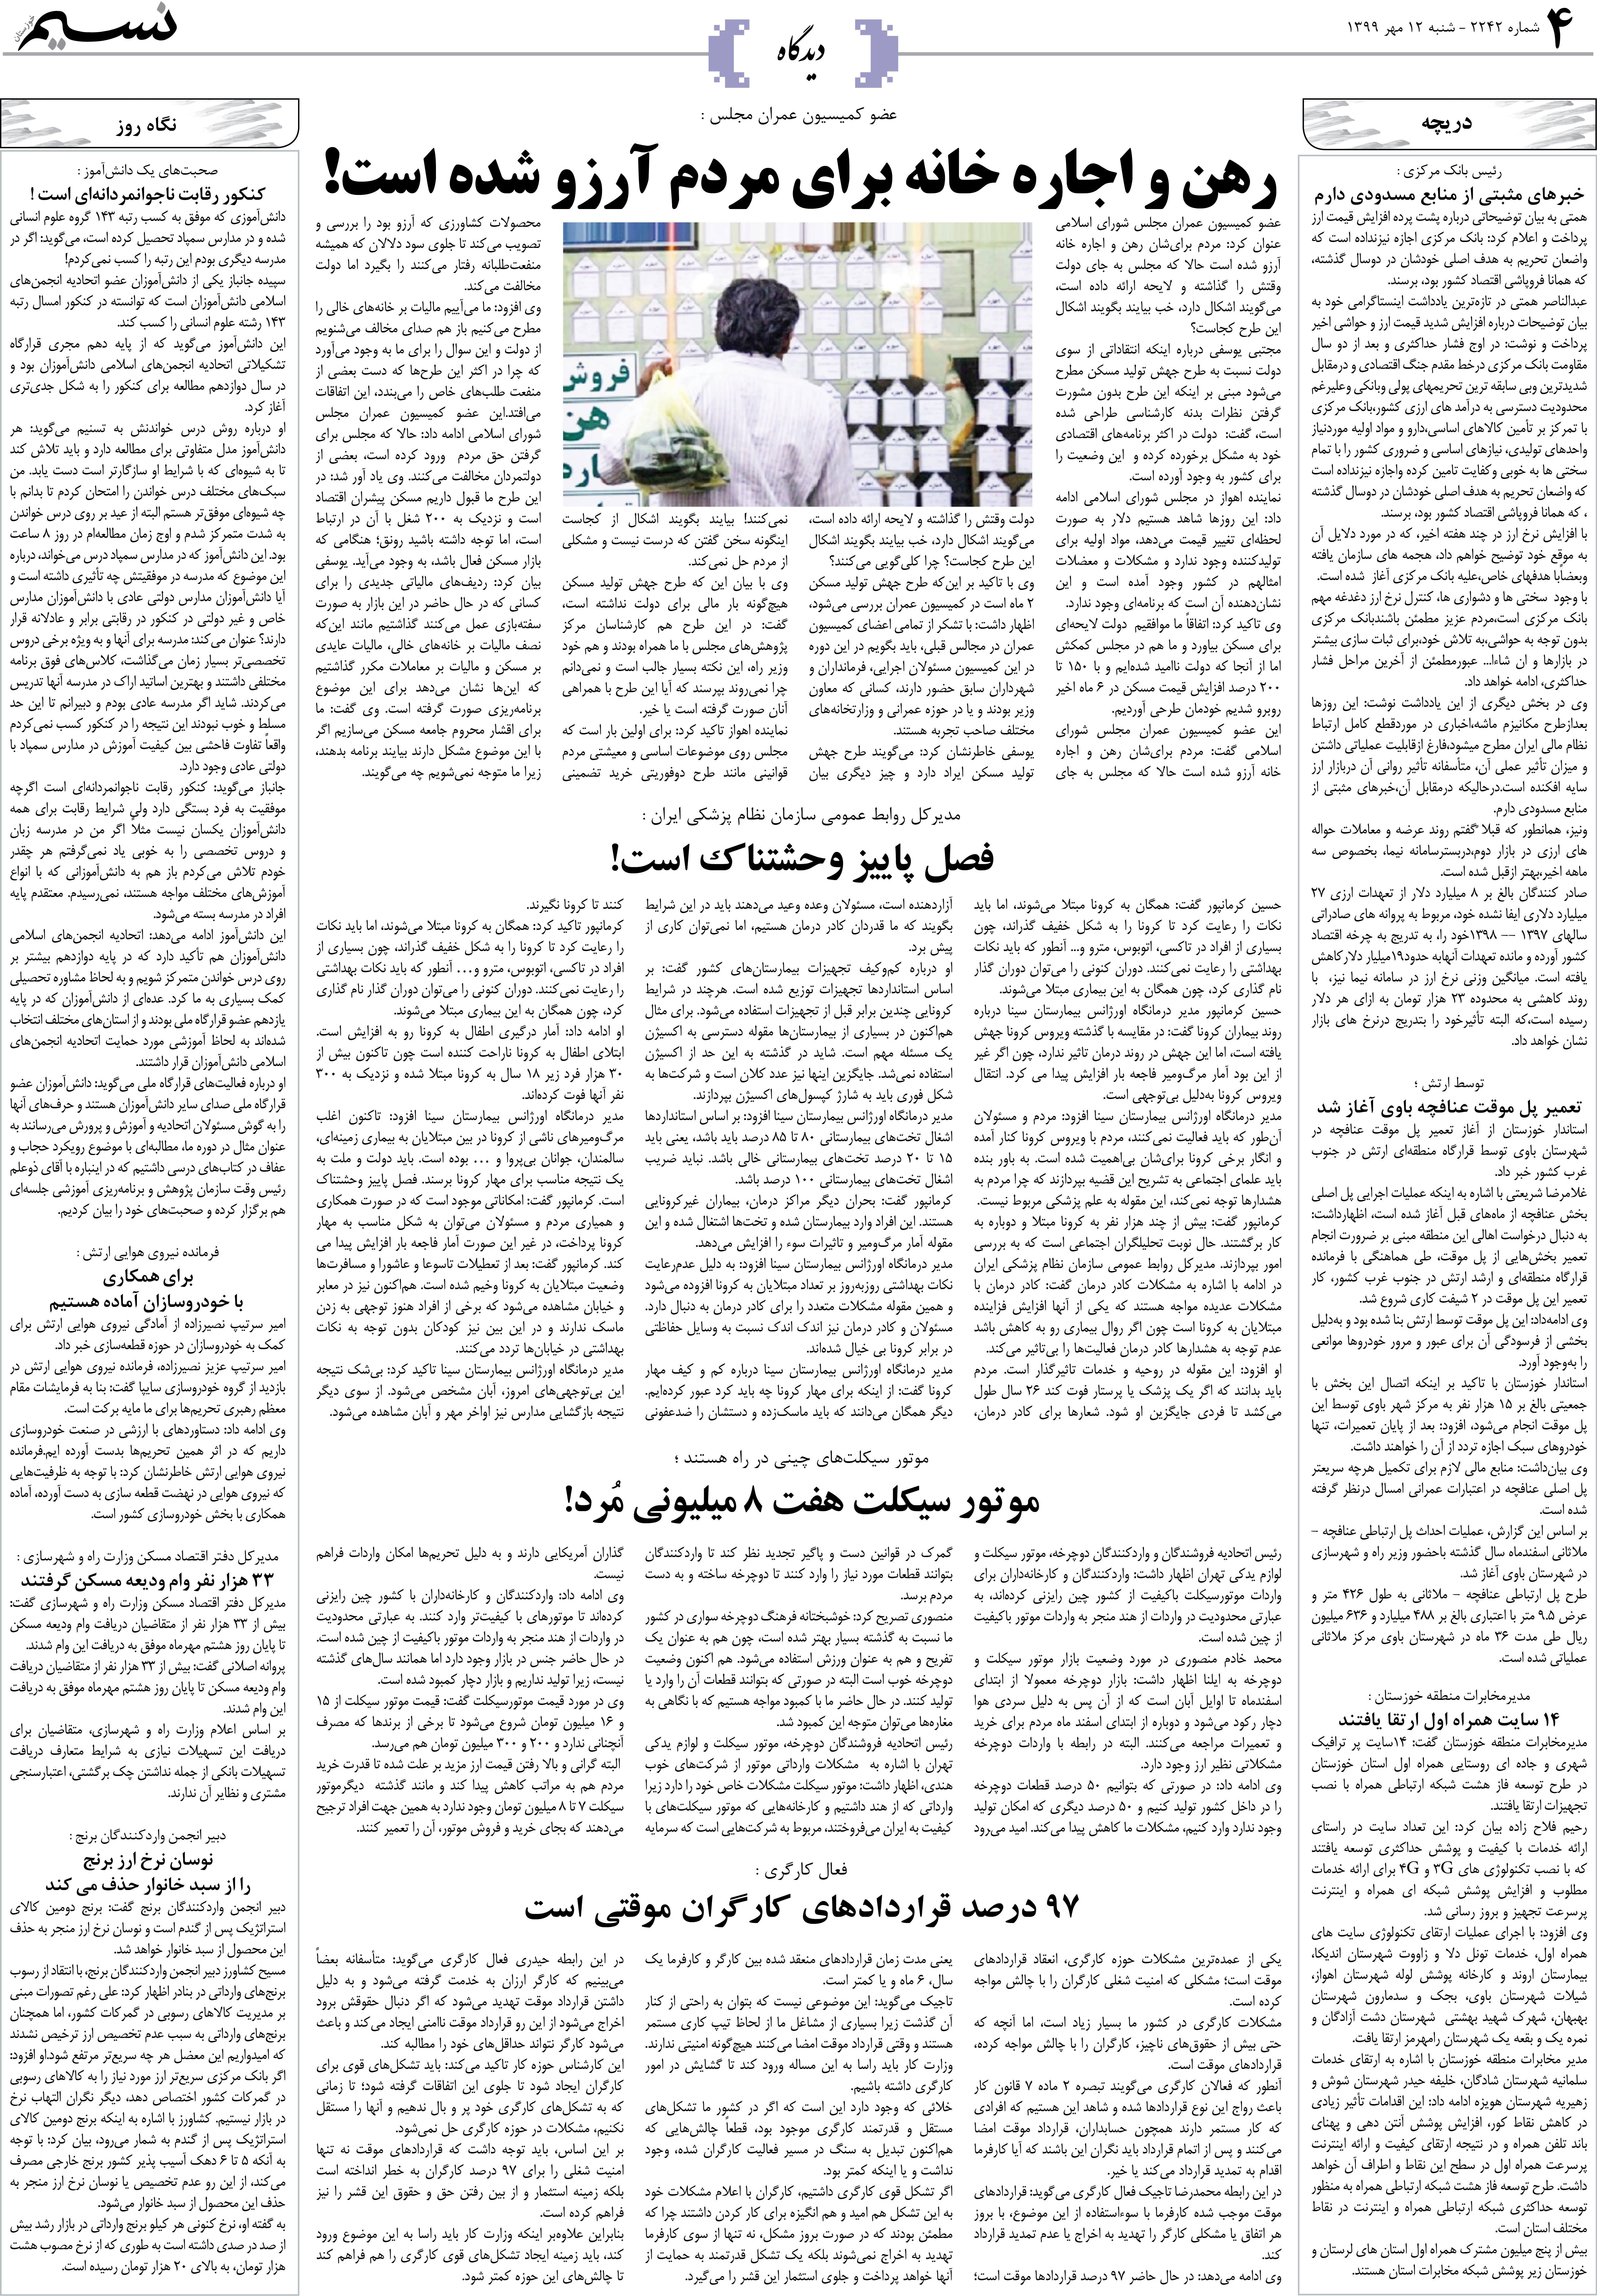 صفحه دیدگاه روزنامه نسیم شماره 2242